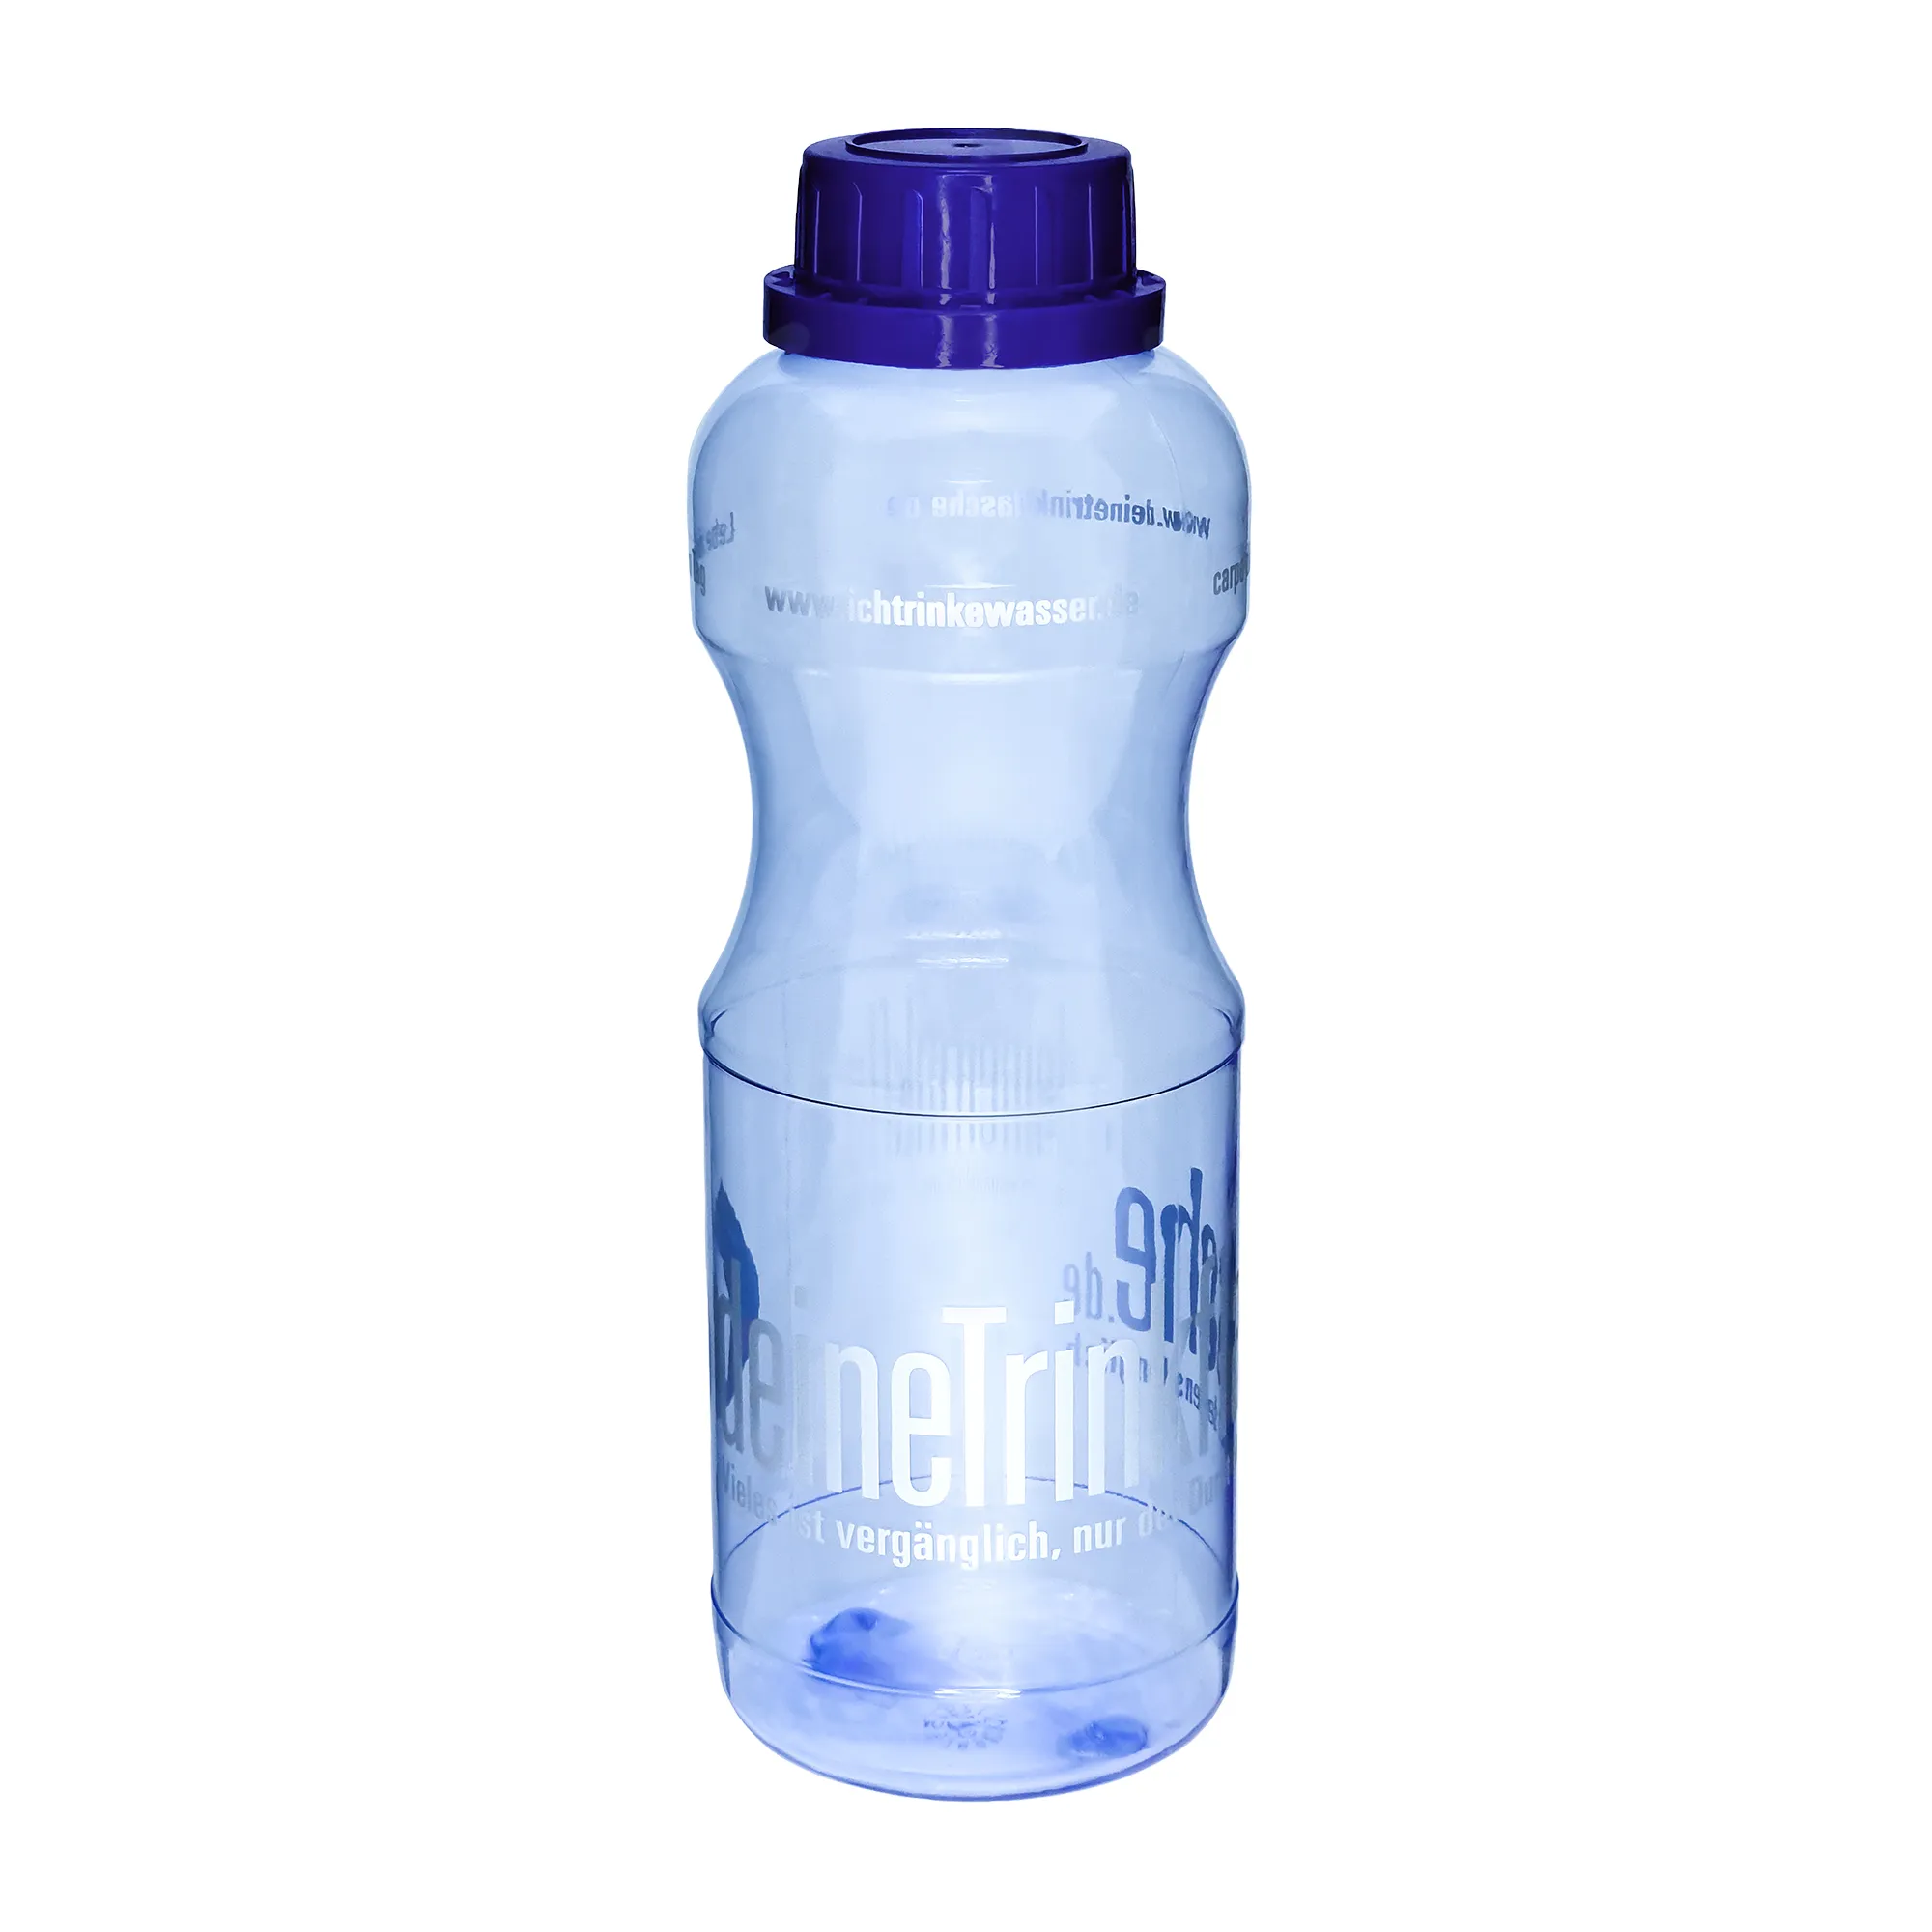 Zu sehen ist eine blau- transparente Trinkflasche mit dunkelblauem Schraubverschluss vor weißem Hintergrund. Man schaut frontal auf die Flasche, sieht einen weißen Schriftzug rund um die Flasche. Das Bild zeigt die Tritan Trinkflasche Adam.